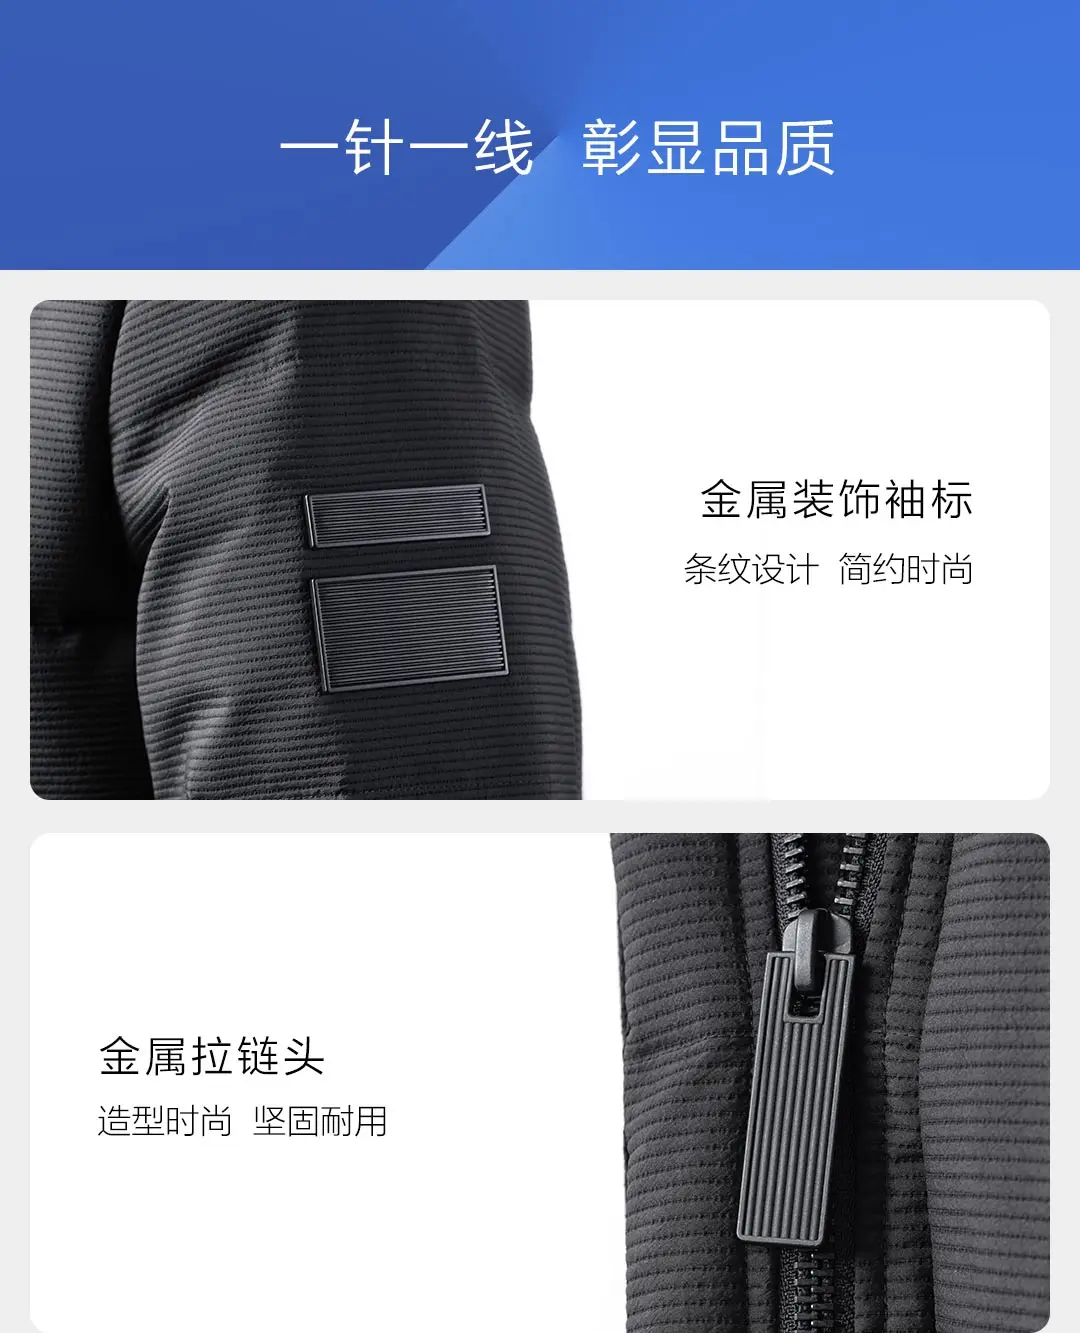 Xiaomi 90Fun текстурированный пуховик с капюшоном Ipx4 Водонепроницаемый Анти-бурение Теплый средней длины мужские пуховики пальто для холодной зимы